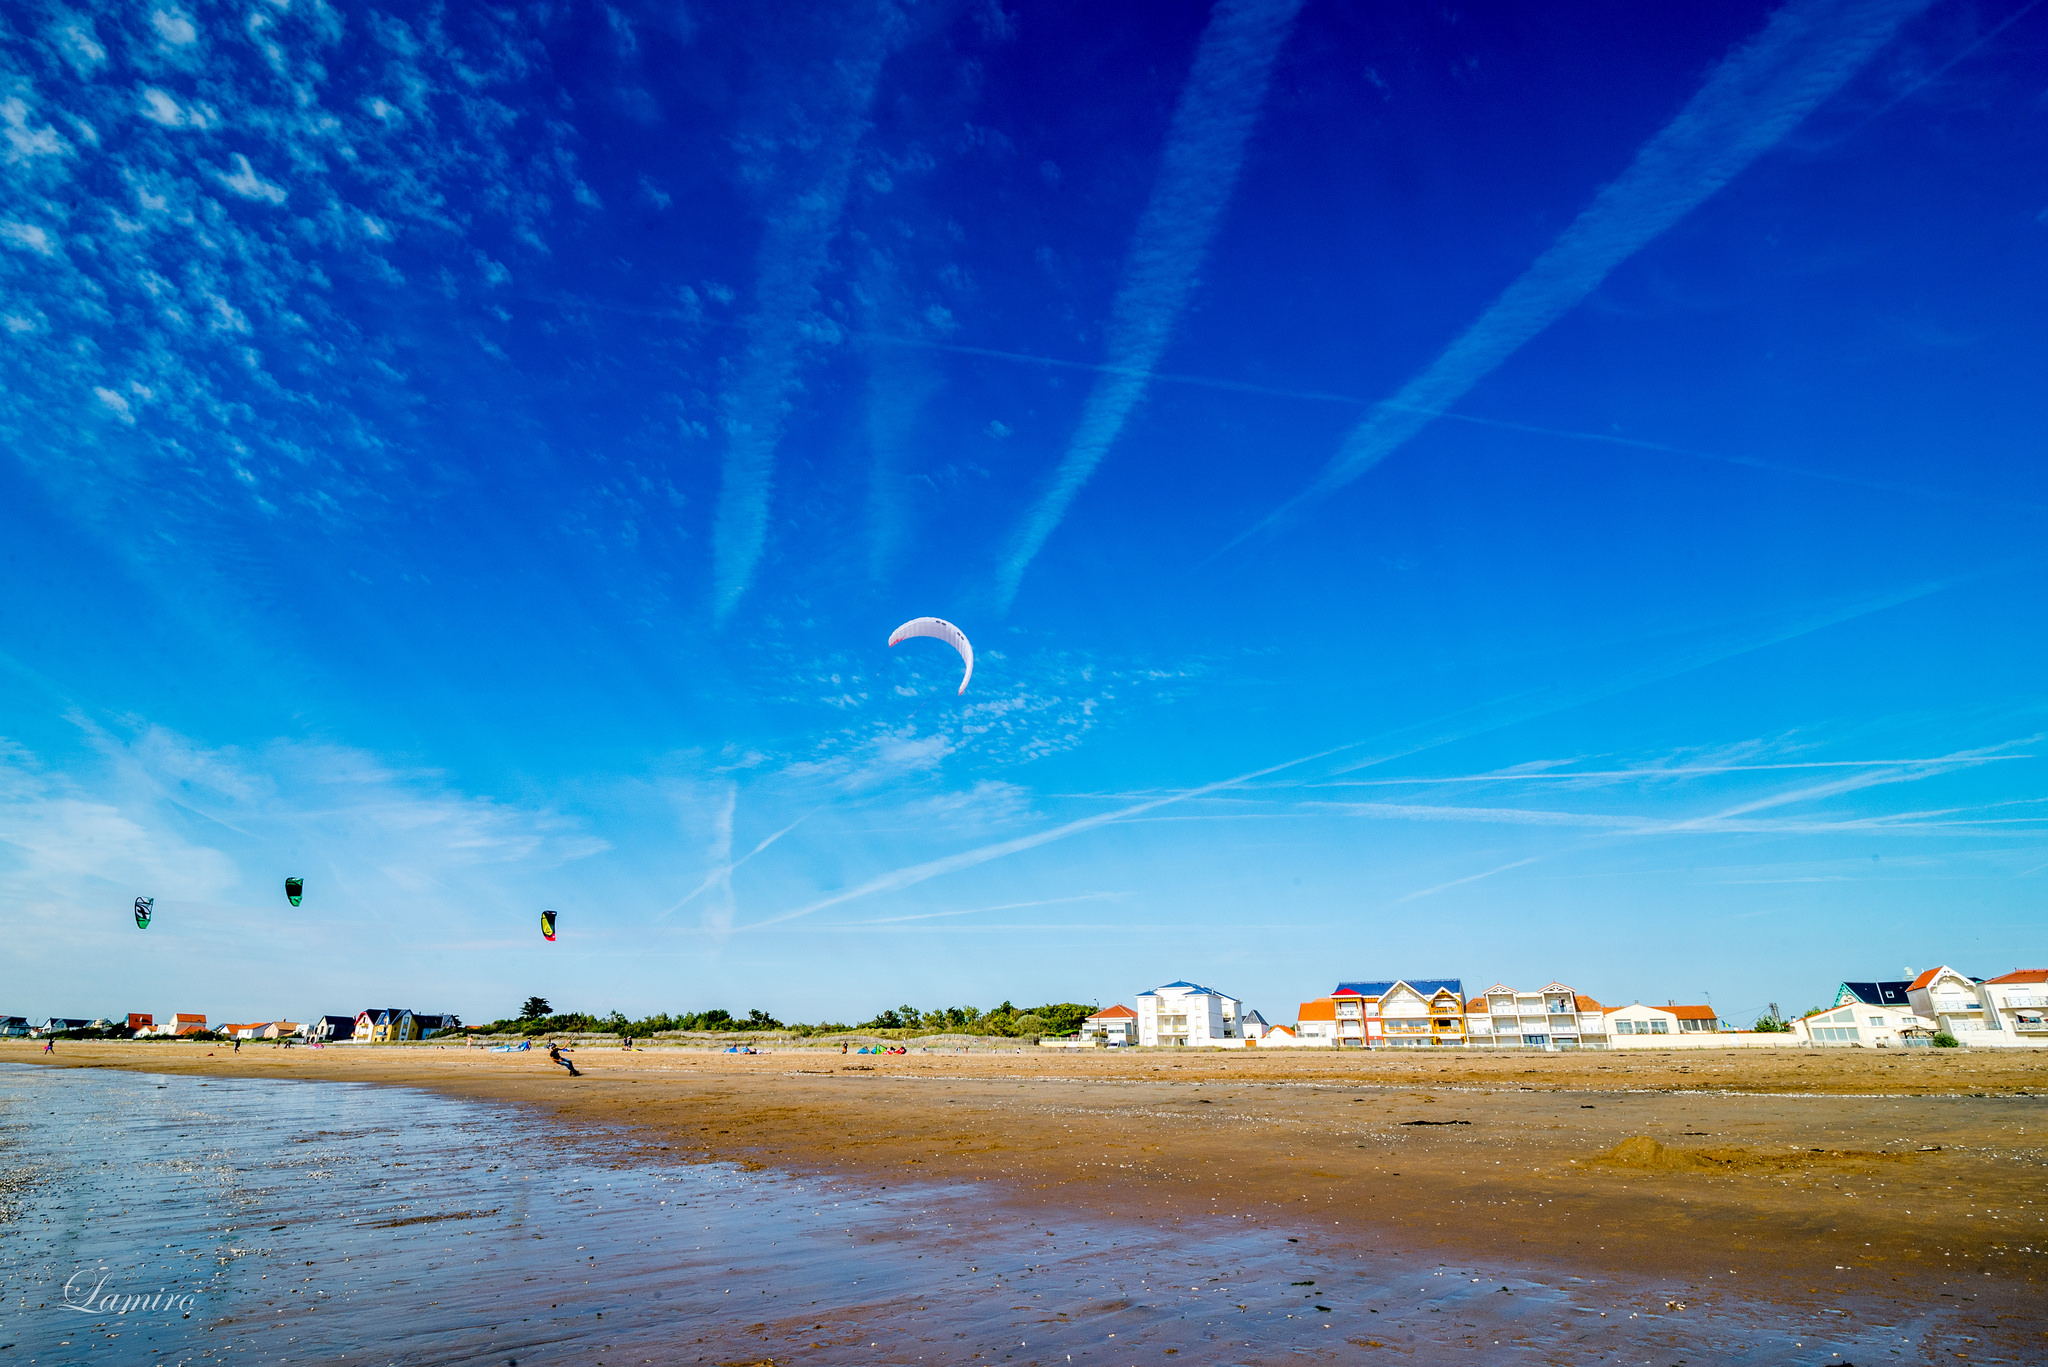 La plage de Châtelaillon, colorée et dynamique. Crédit photo @Michel Rocca - Flickr